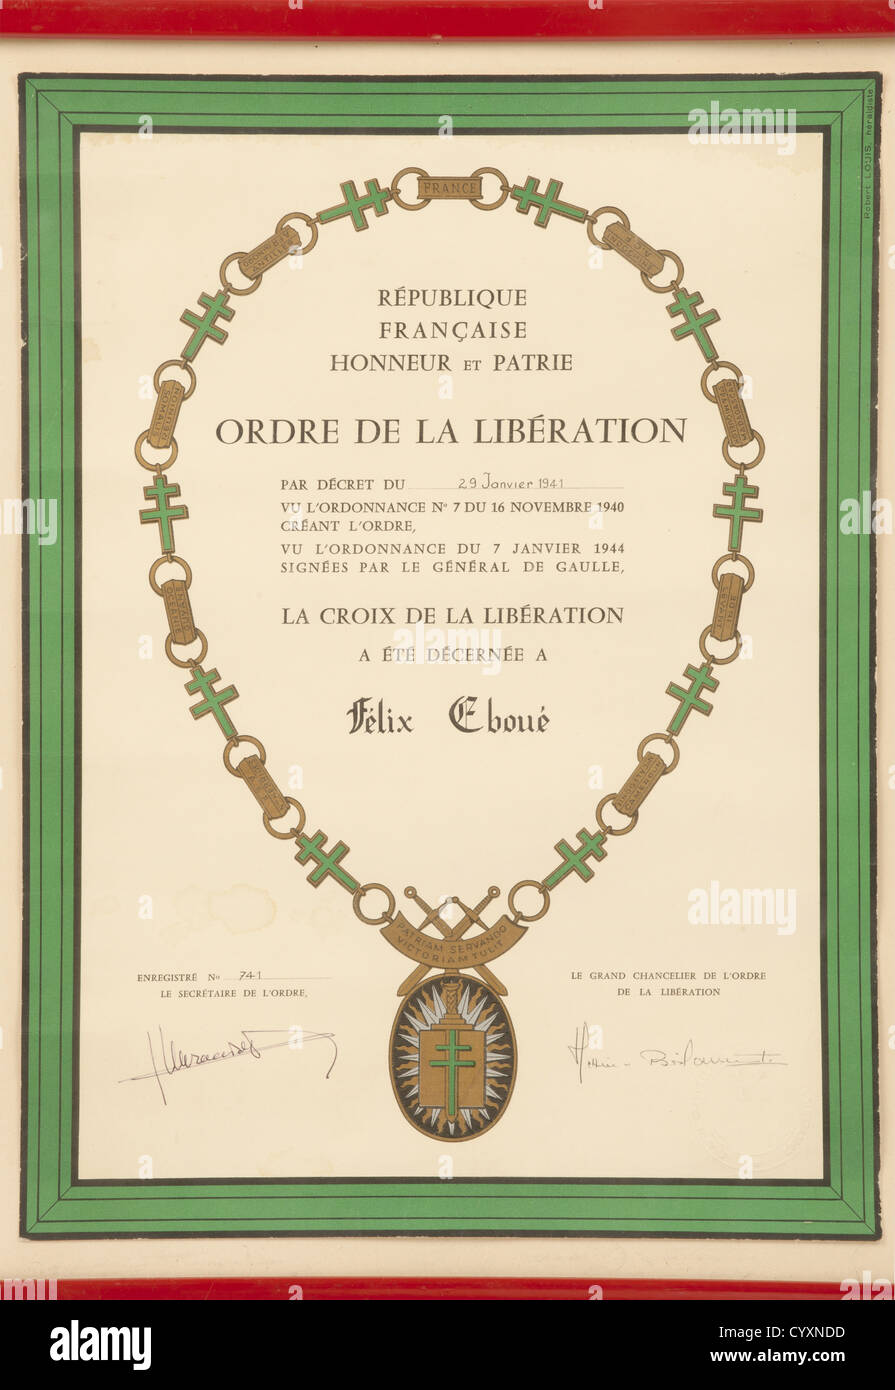 RESISTANCE ET FORCES FRANCAISES LIBRES,Gouverneur-Général Félix Eboué(1884 - 1944),Eugénie et Ginette Eboué,important ensemble de documents. Diplôme de Compagnon de l'Ordre de la Libération('3ème modèle'),la Croix de la Libération ayant été décernée à Félix Eboué par décret du '29 Janvier 1941'(date manuscrite,ainsi que le prénom,le nom et le numéro d'enregistrement '741'),tampon à sec de la Grande Chancellerie de l'Ordre de la Libération et signatures autographes du Grand Chancelier Claude Hettier de Boislambert et du secrétaire de l'Ordre Jules Murr,Additional-Rights-Clearences-Not Available Stock Photo